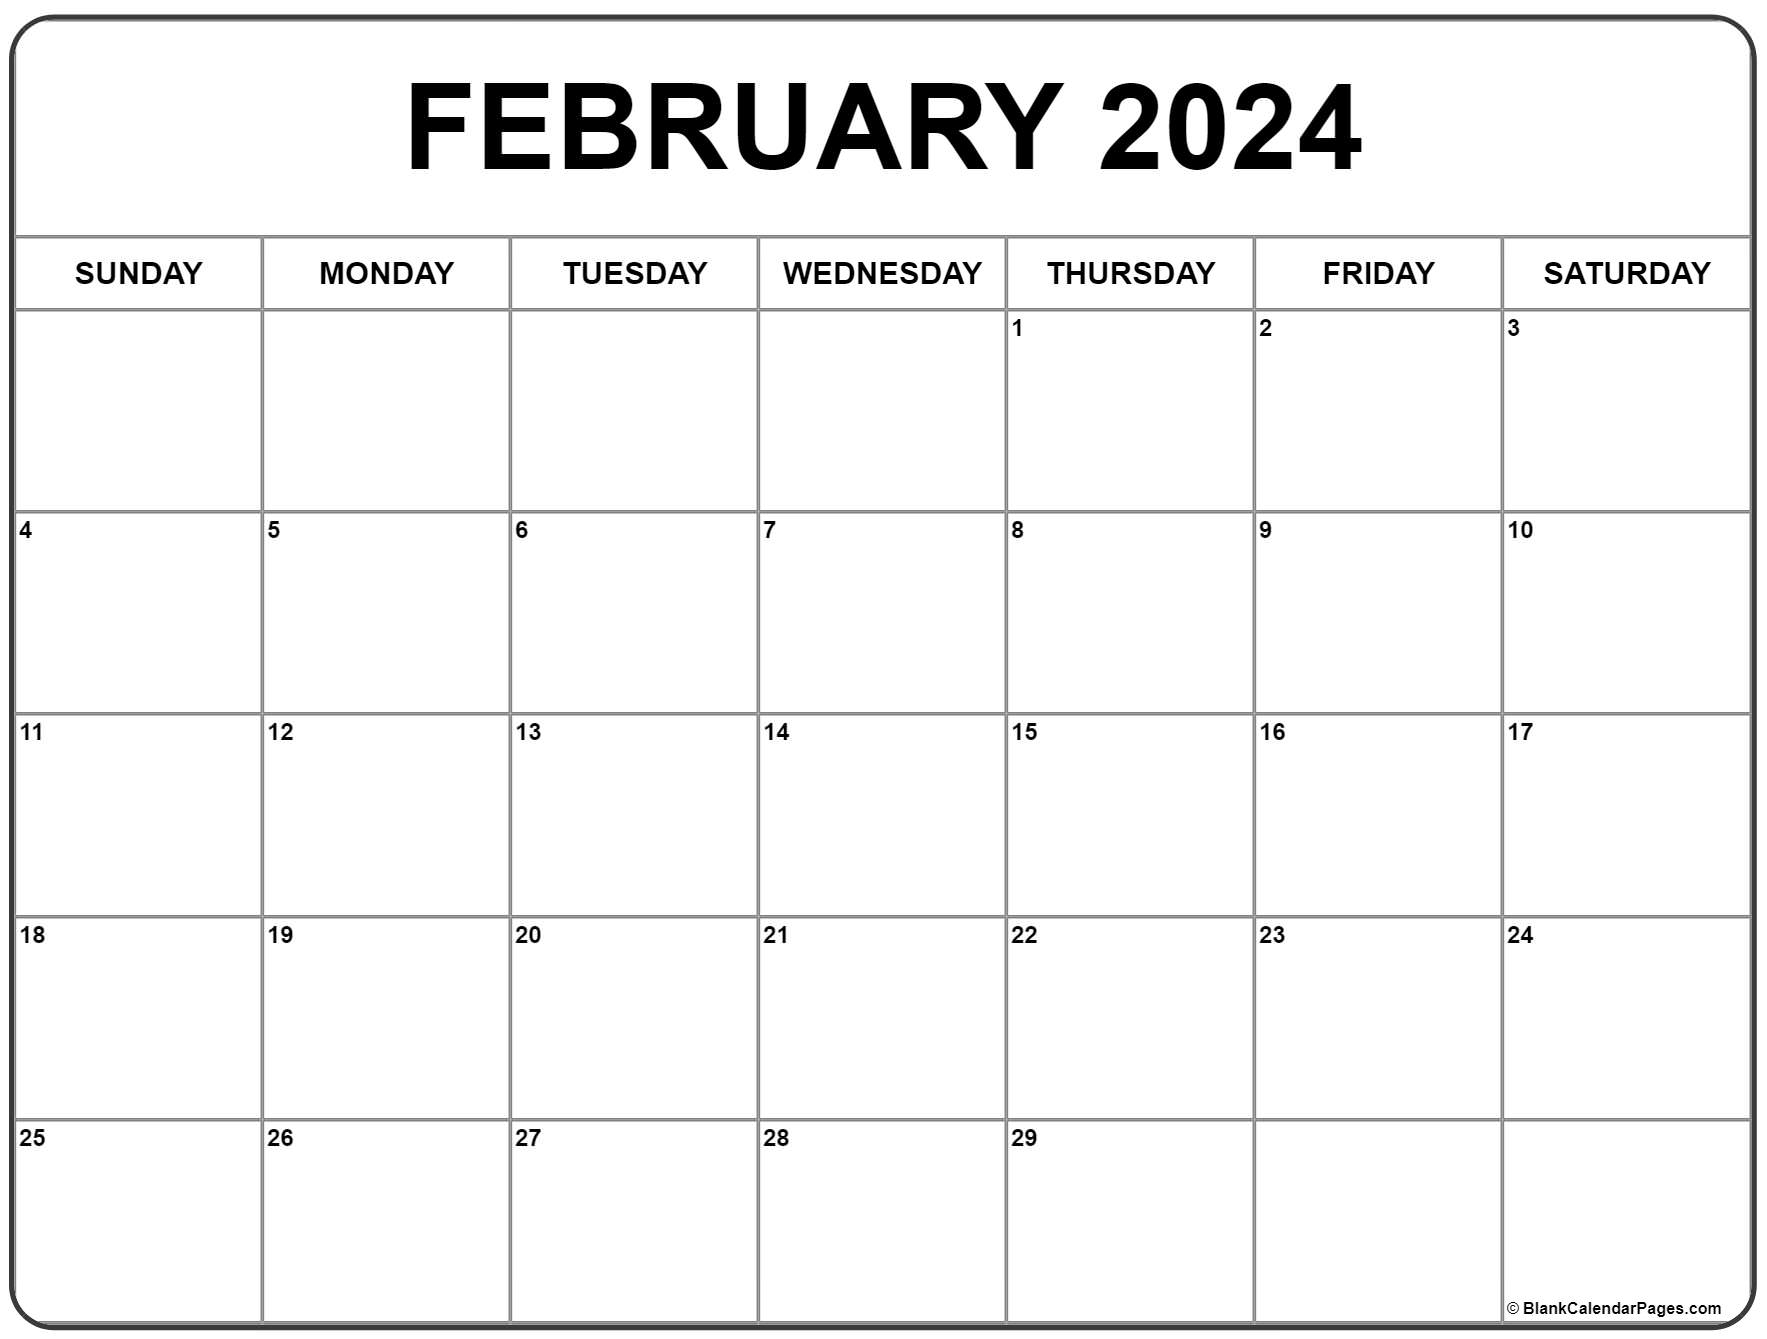 February 2024 Calendar | Free Printable Calendar for Printable February Calendar 2024